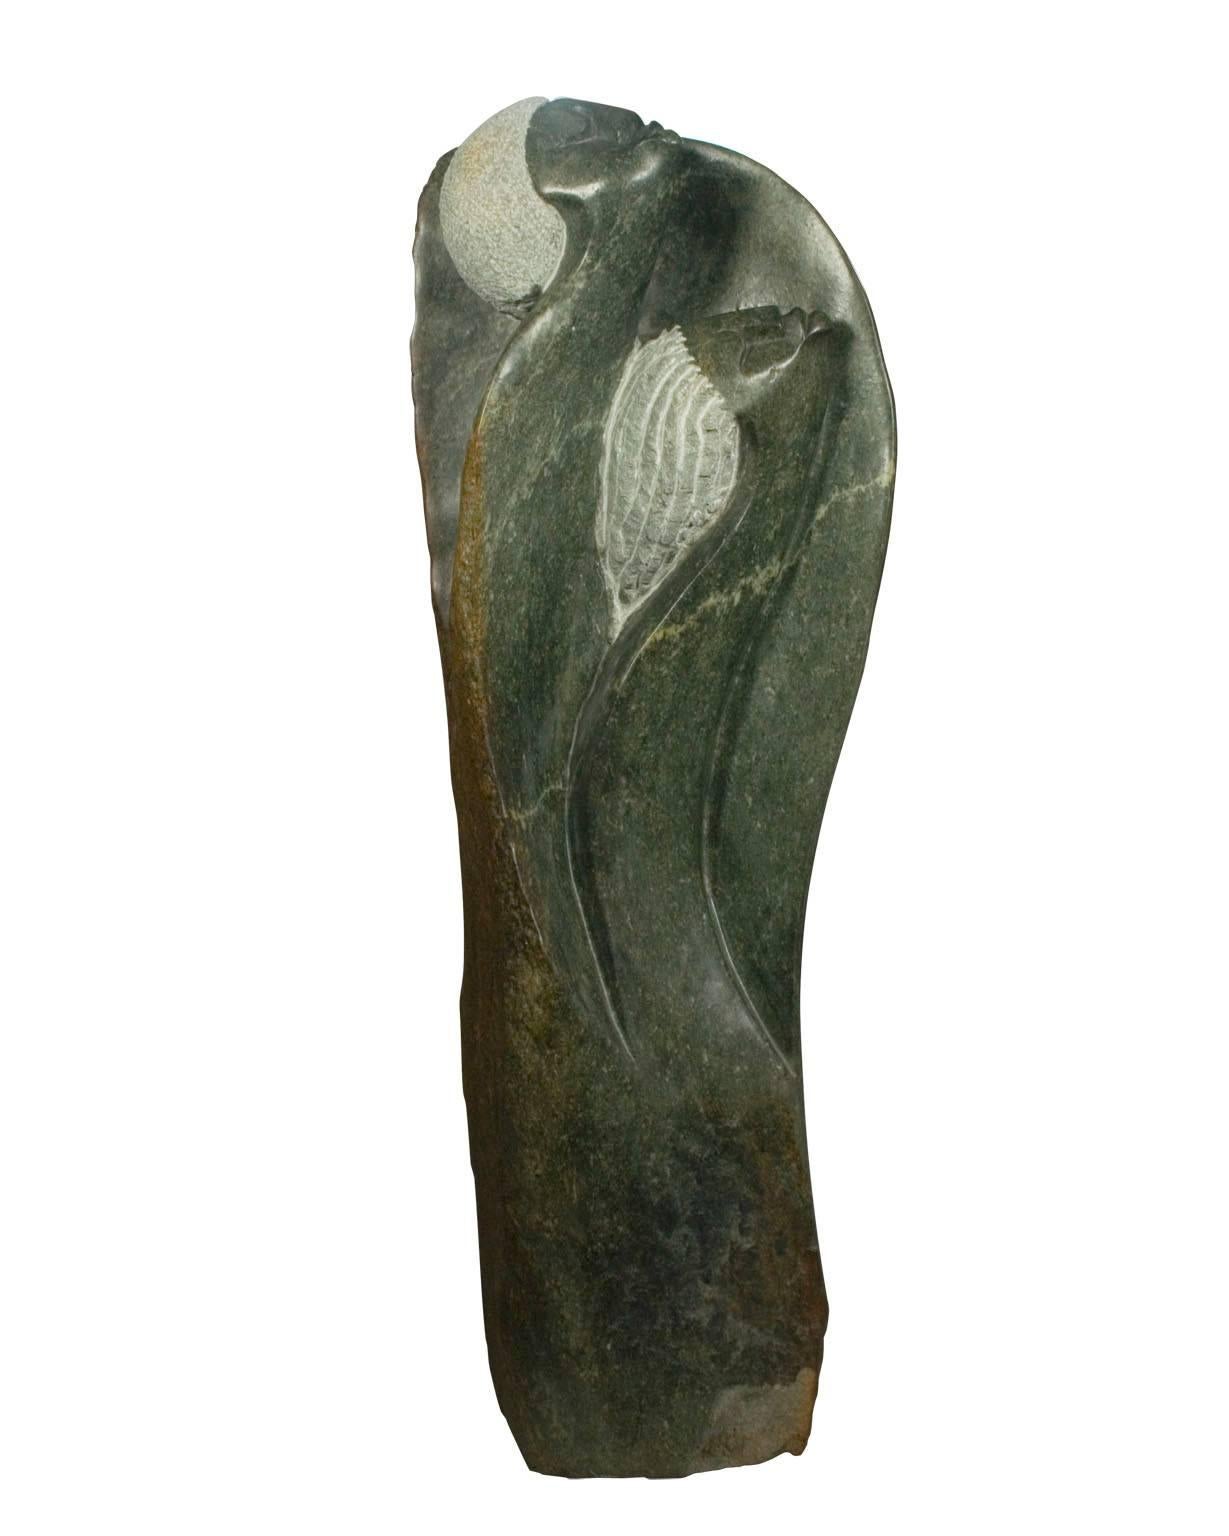 "Protected Spirits" ist eine aus Opalstein geschnitzte Skulptur von Picket, der dem Stamm der Shona in Simbabwe angehört. Es zeigt zwei abstrahierte Figuren, vermutlich Geister, die nach oben zu schweben scheinen. 

38 1/2" x 13 1/2" x 7 1/4"